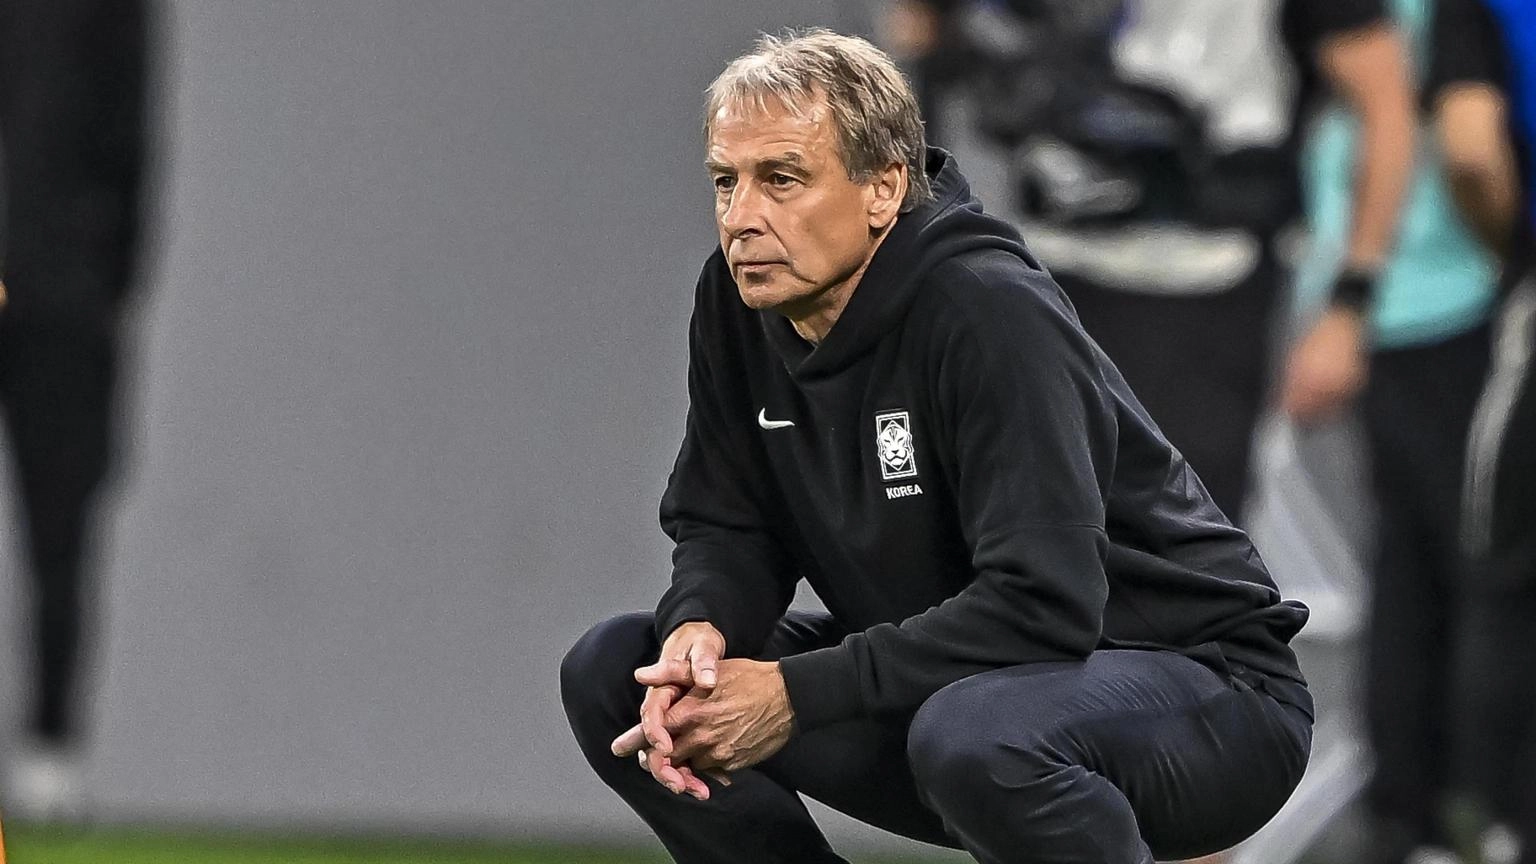 Klinsmann verso l'esonero, Corea del Sud vuole licenziare il ct